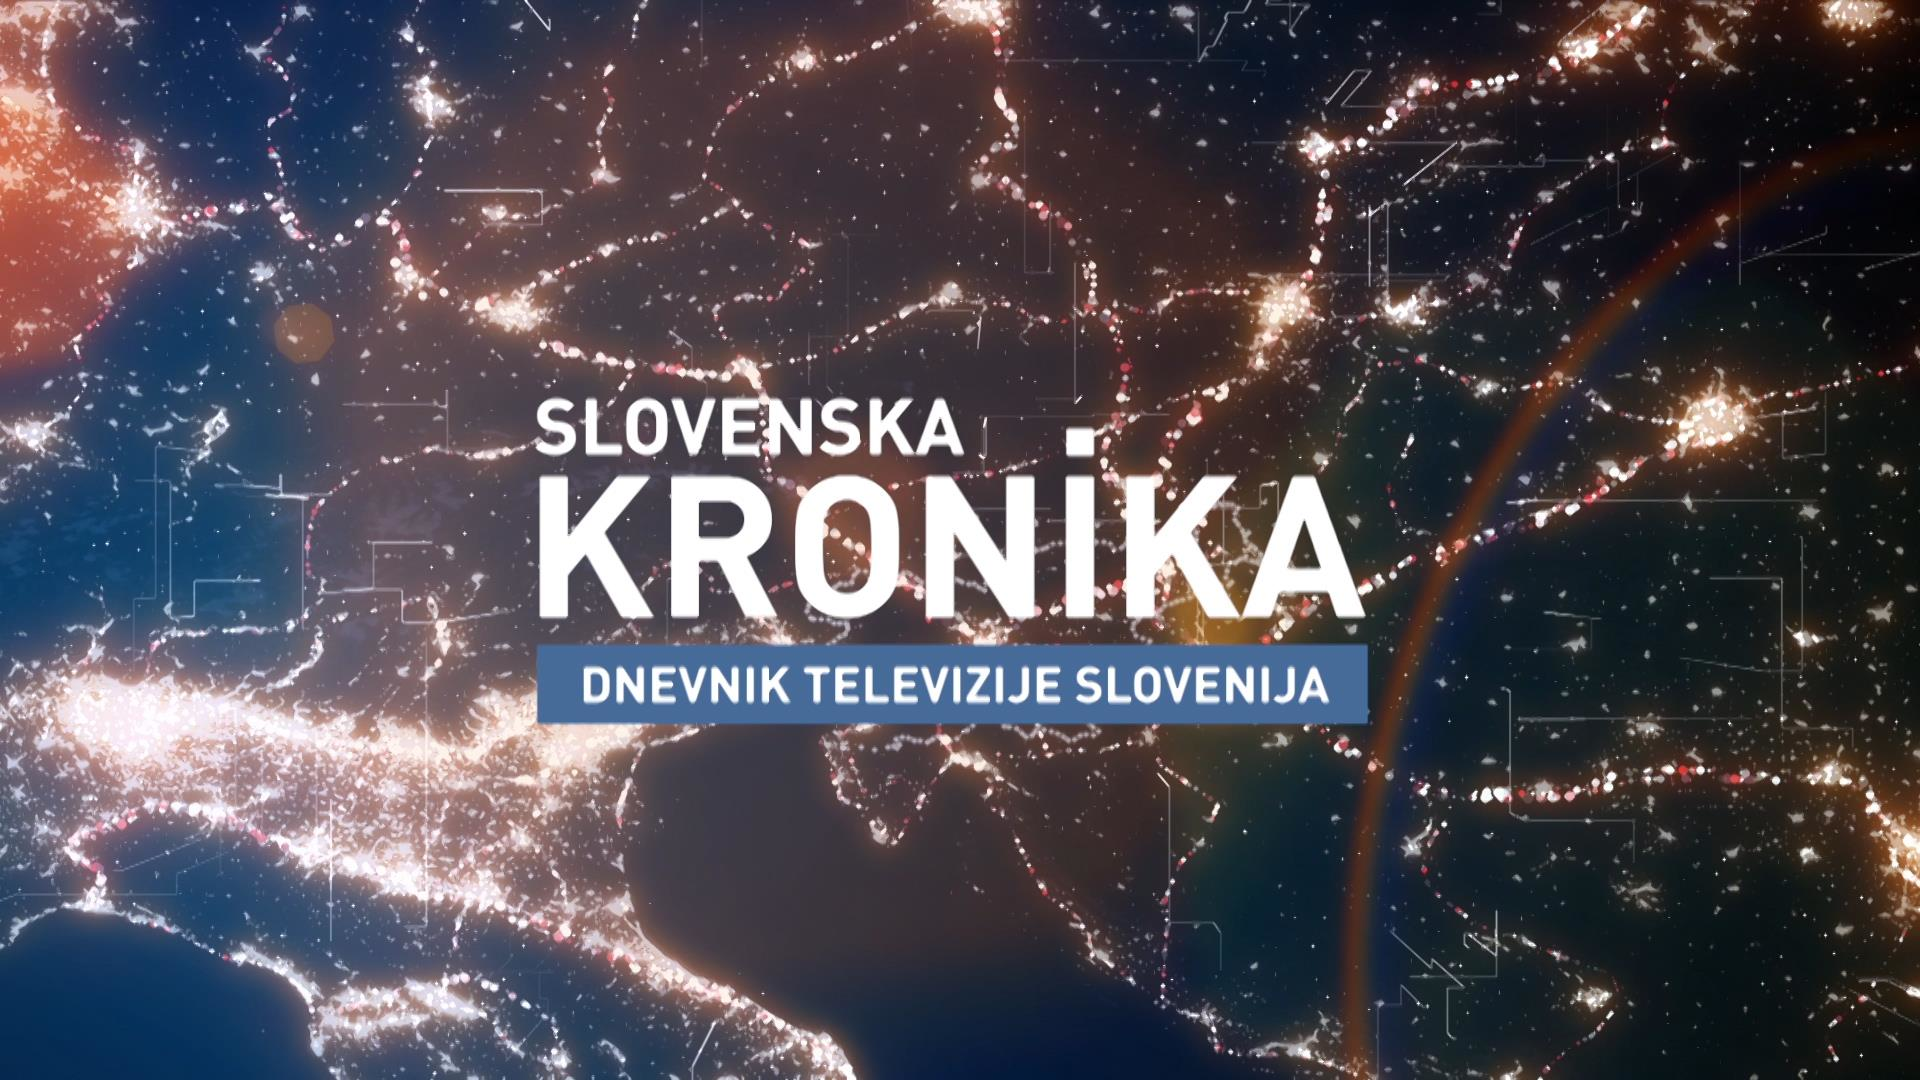 Slovenska kronika